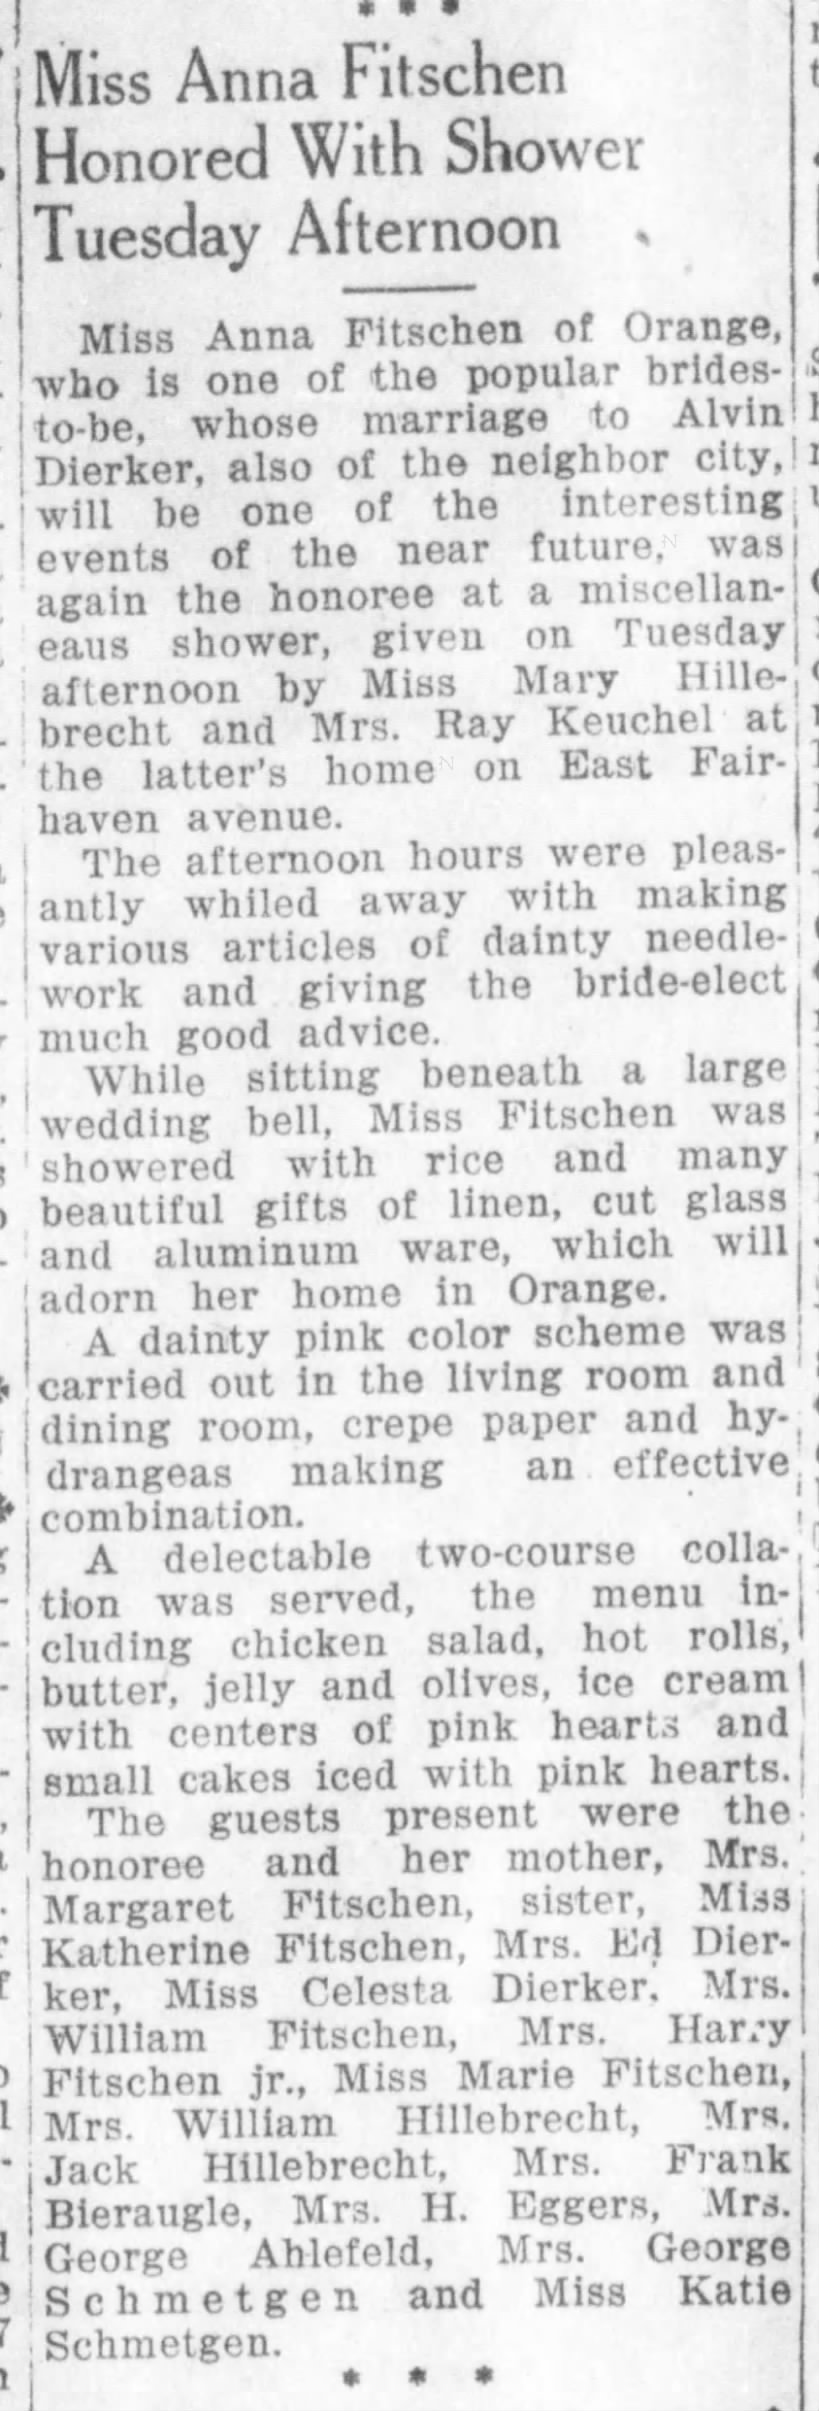 Anna Fitschen - Alvin Dierker Marriage. The Orange County Register 05 July, 1924